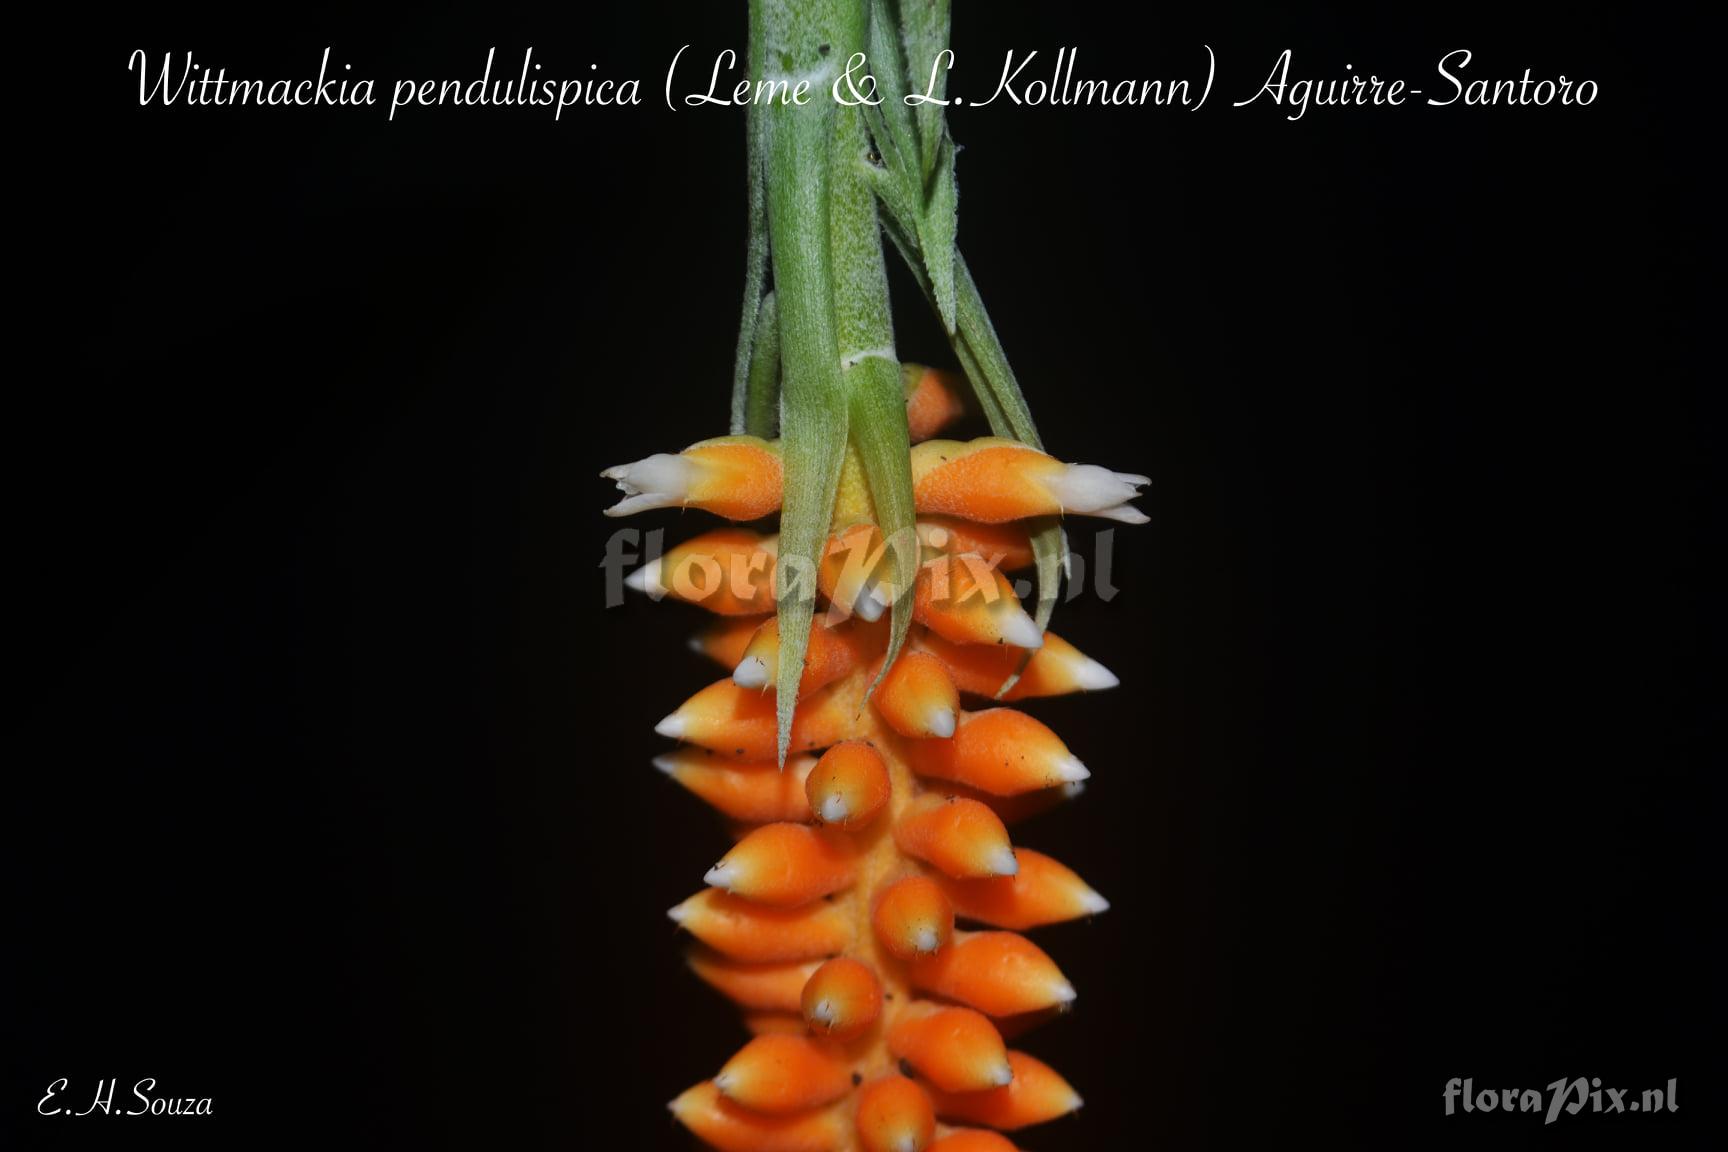 Wittmackia pendulispica